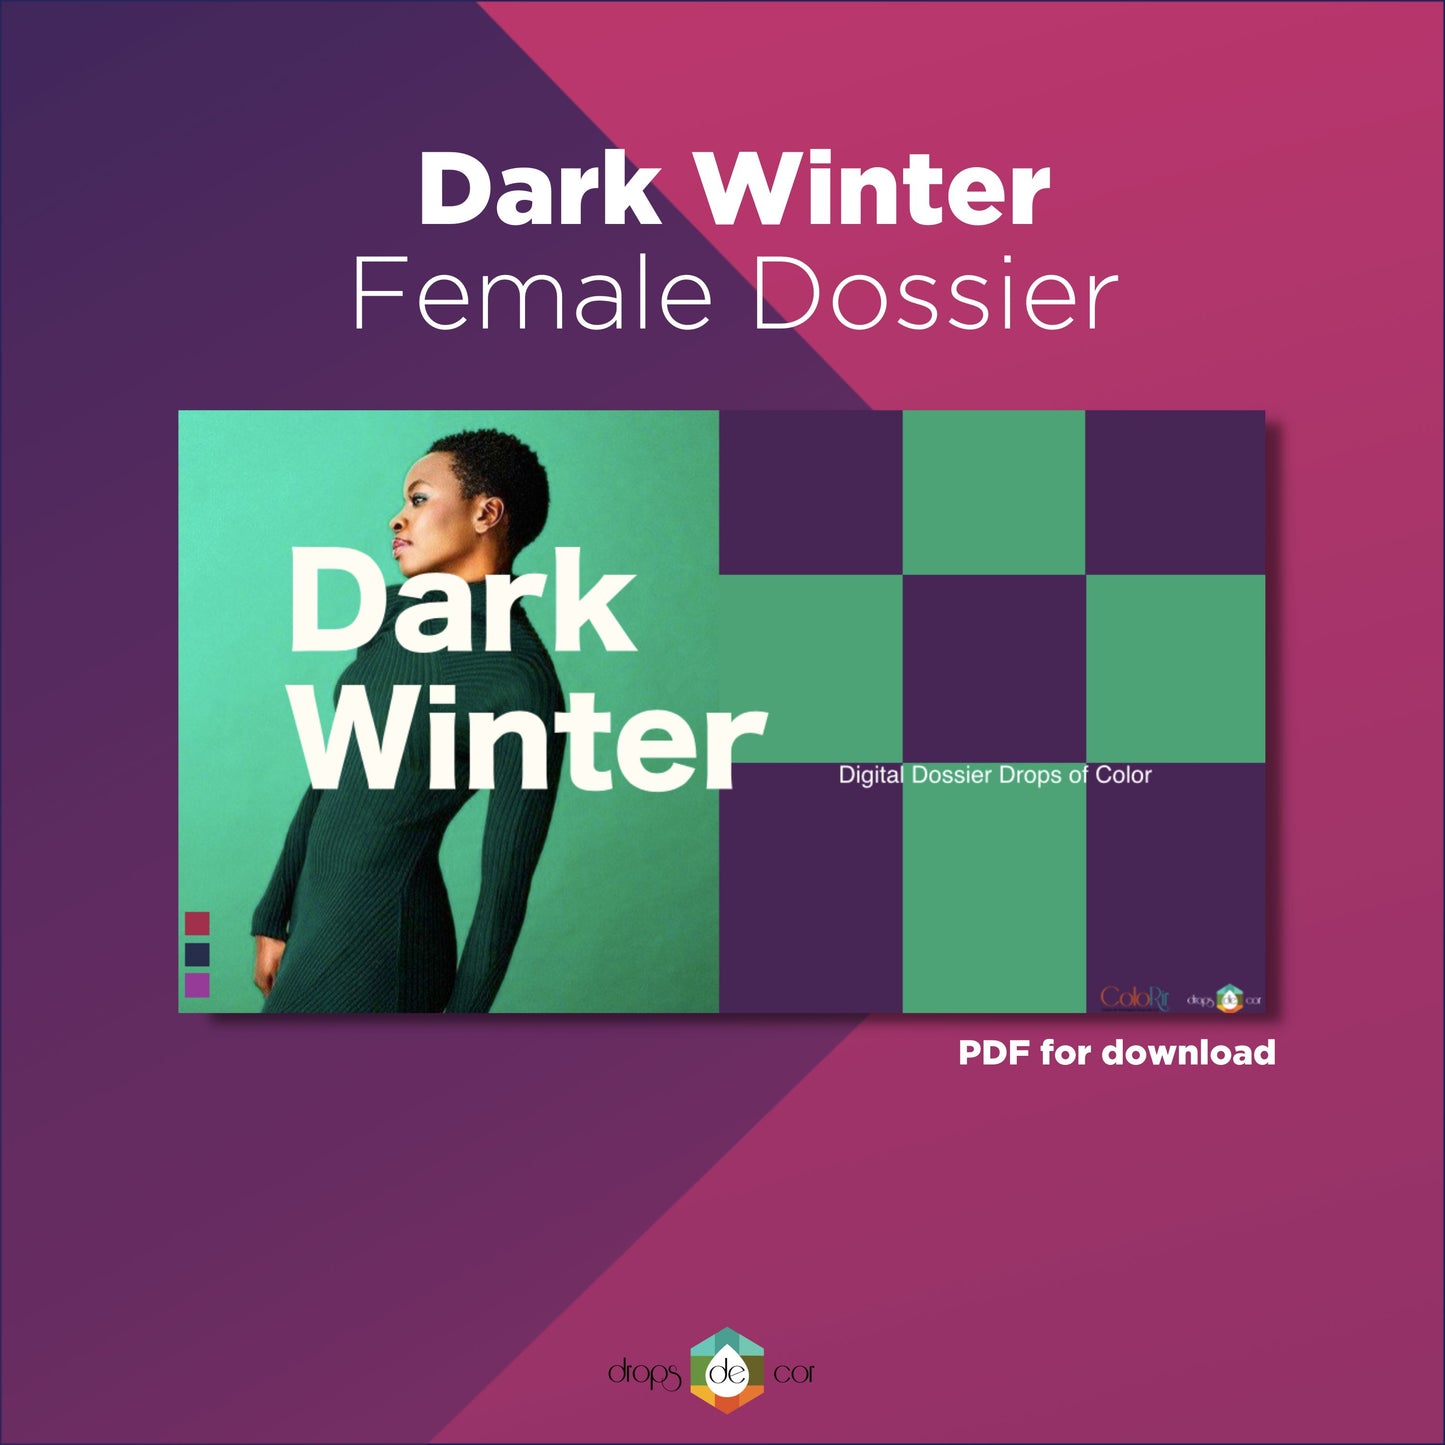 Dossier digital de invierno oscuro